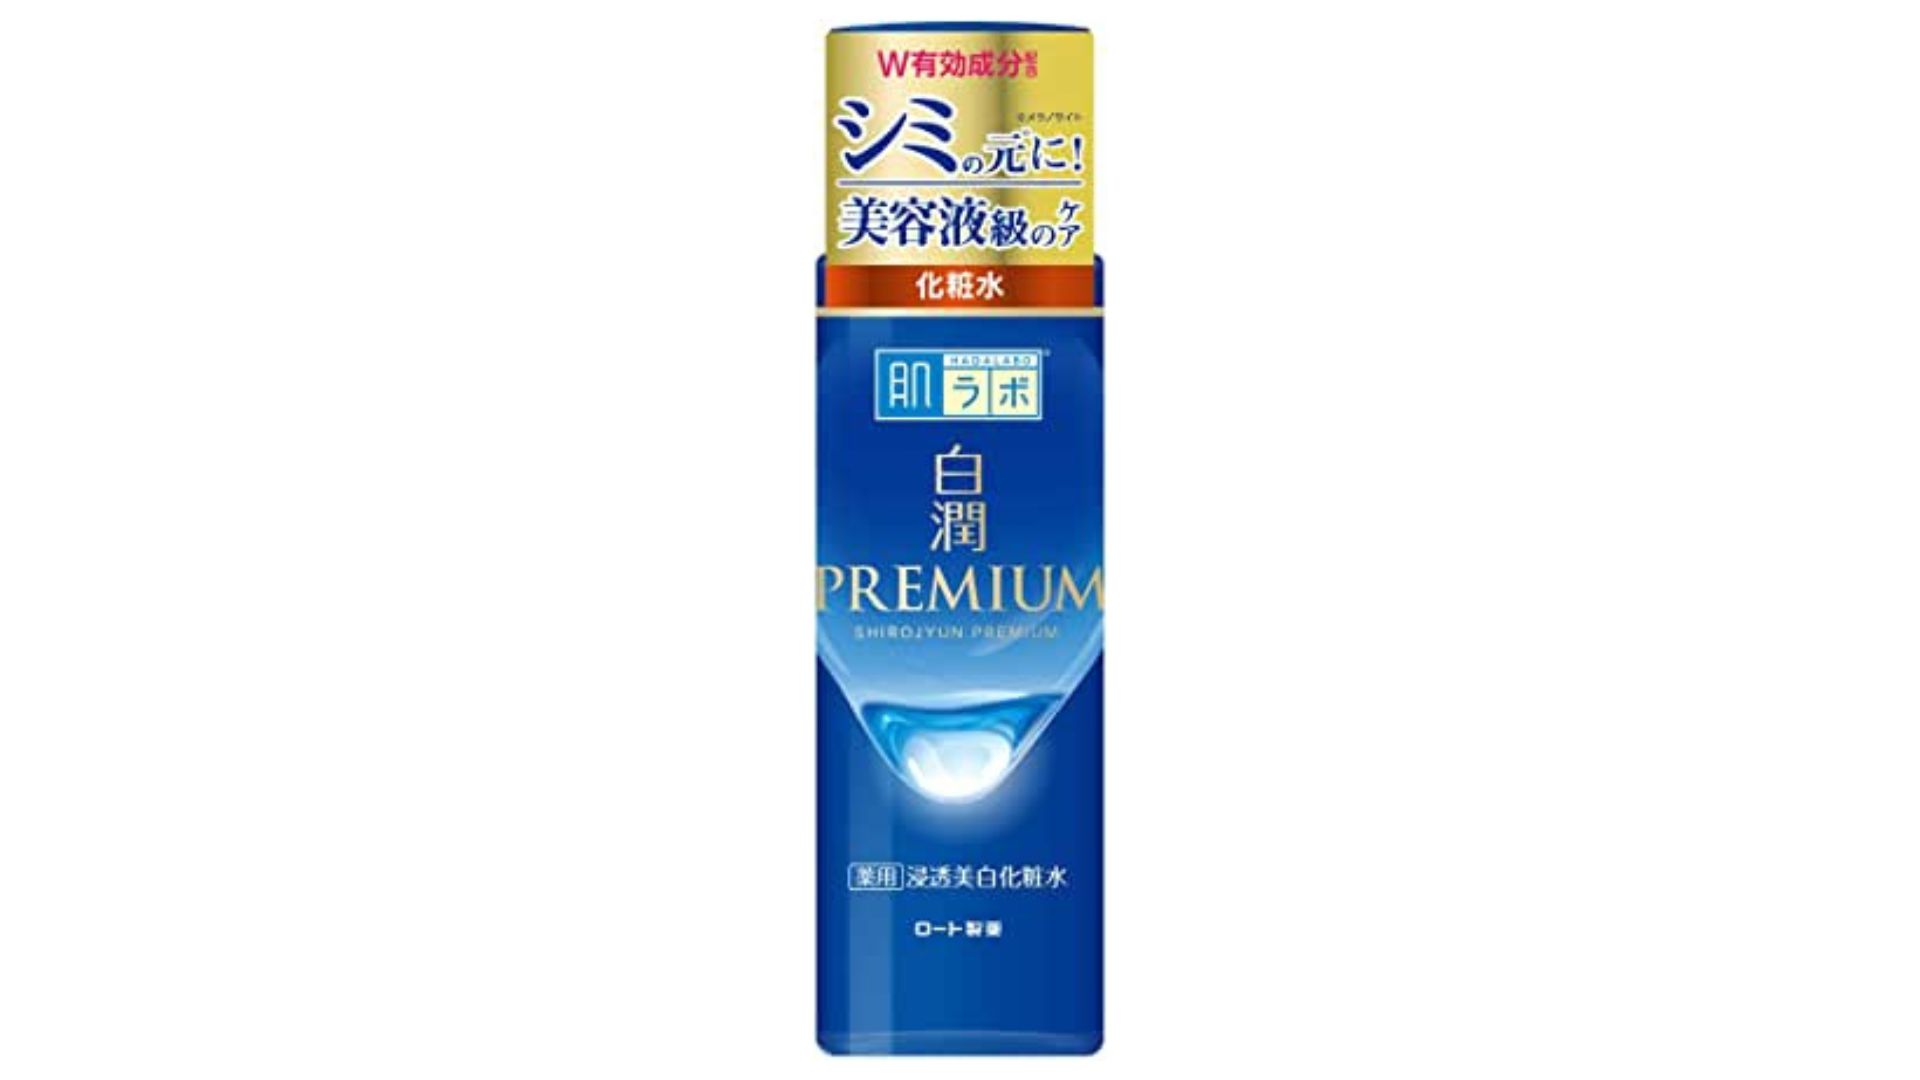 【商品画像】白潤プレミアム薬用浸透美白化粧水